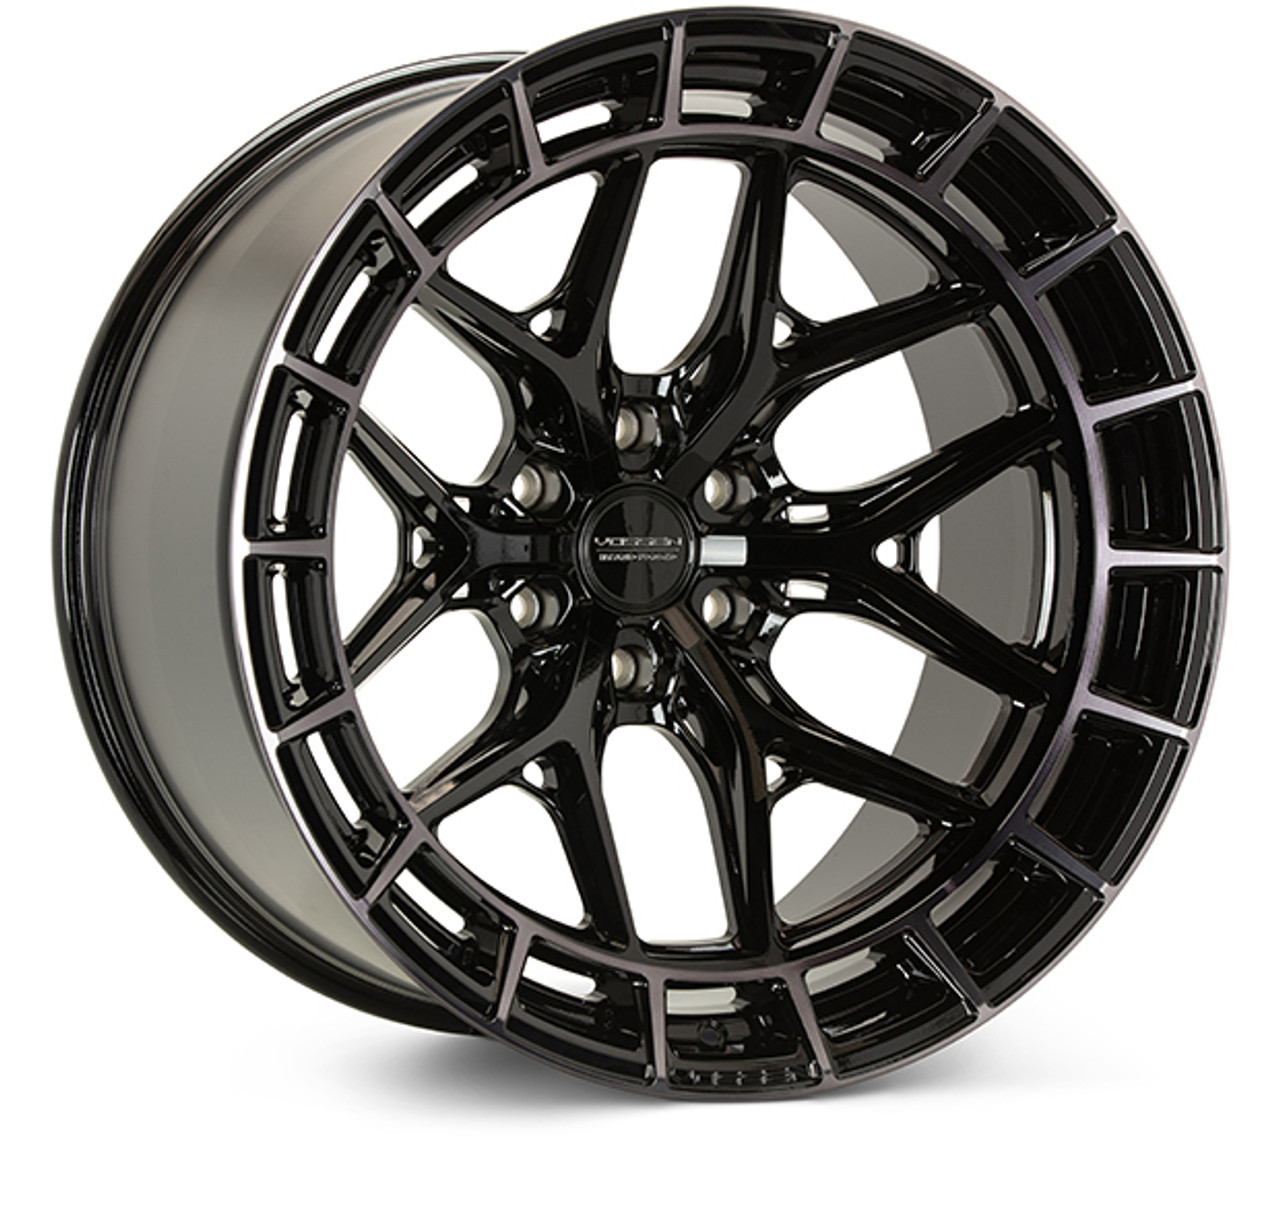 Vossen HFX-1 Wheel - 20x9.5 / 6x135 / +15 Offset / Deep / Tinted Gloss Black